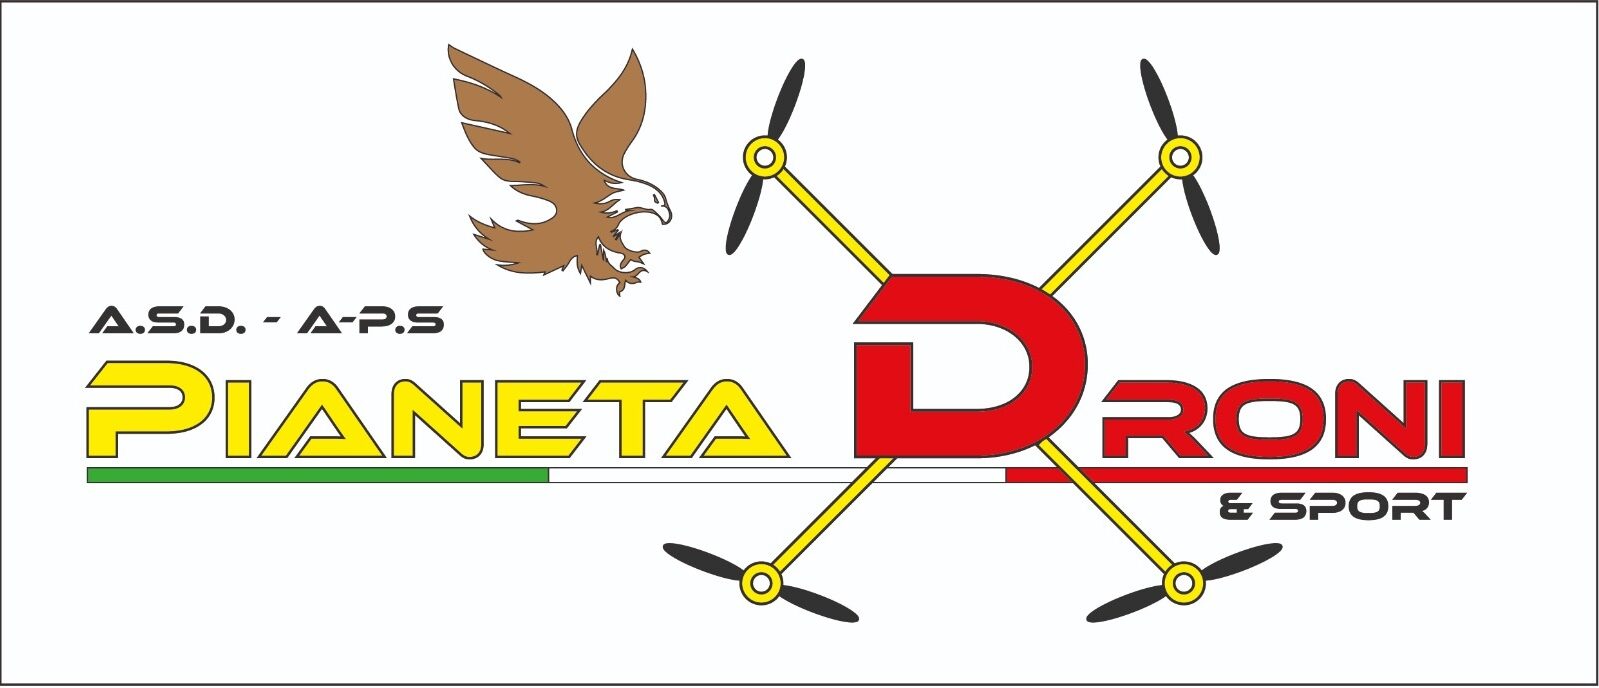 Pianeta Droni & Sport A.S.D e A.P.S Italia